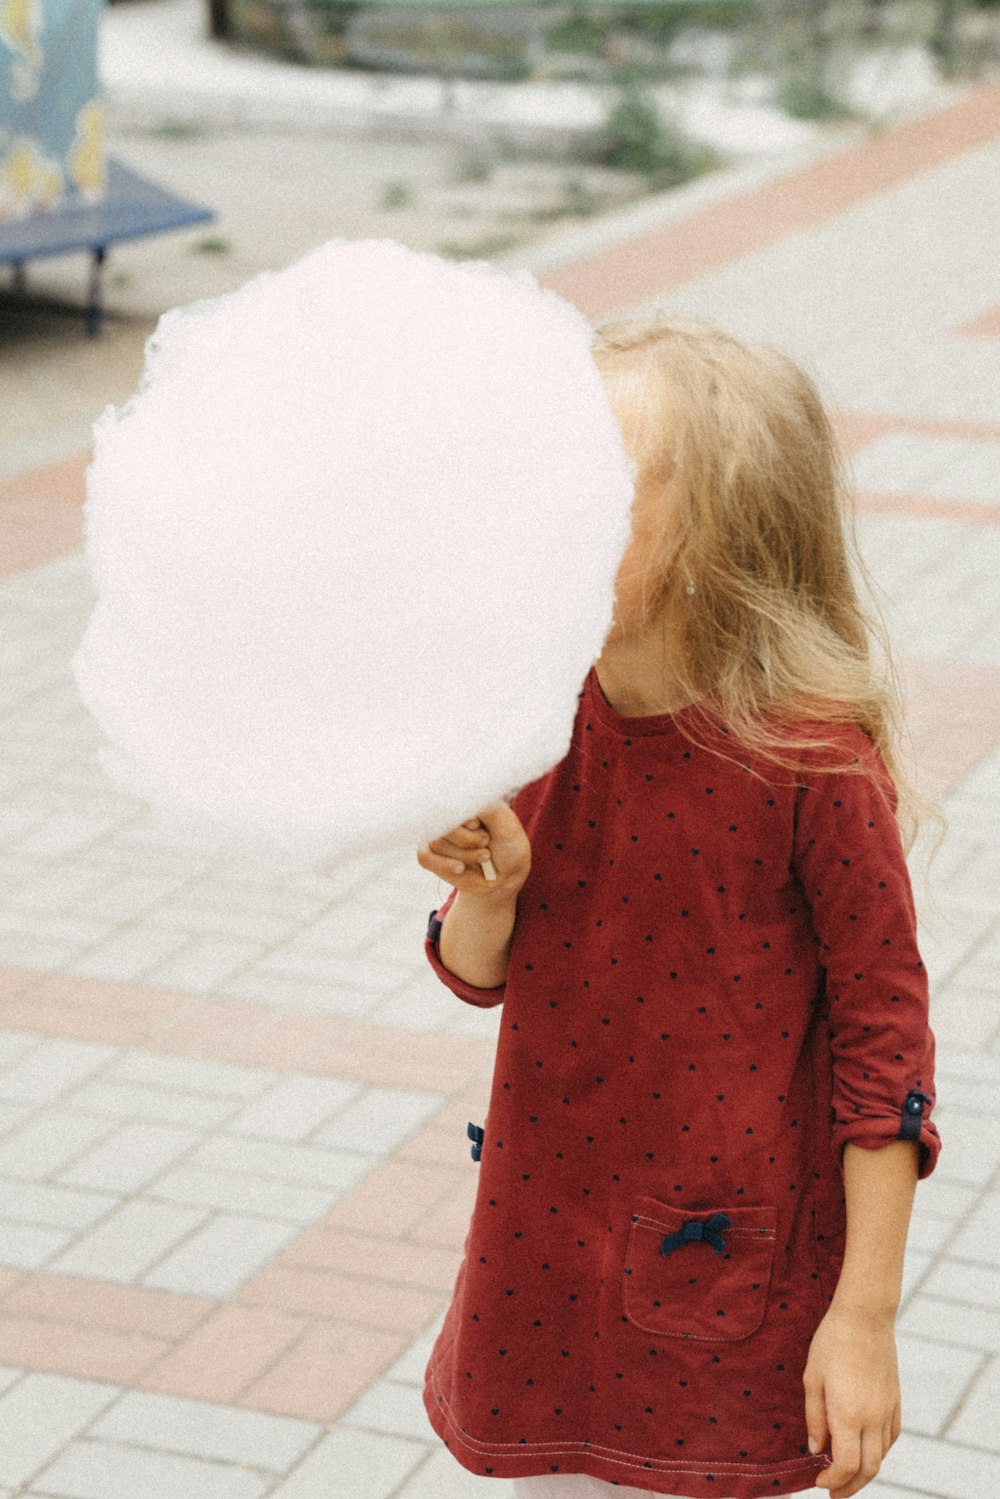 uma menina que segura uma grande bola de algodão branca